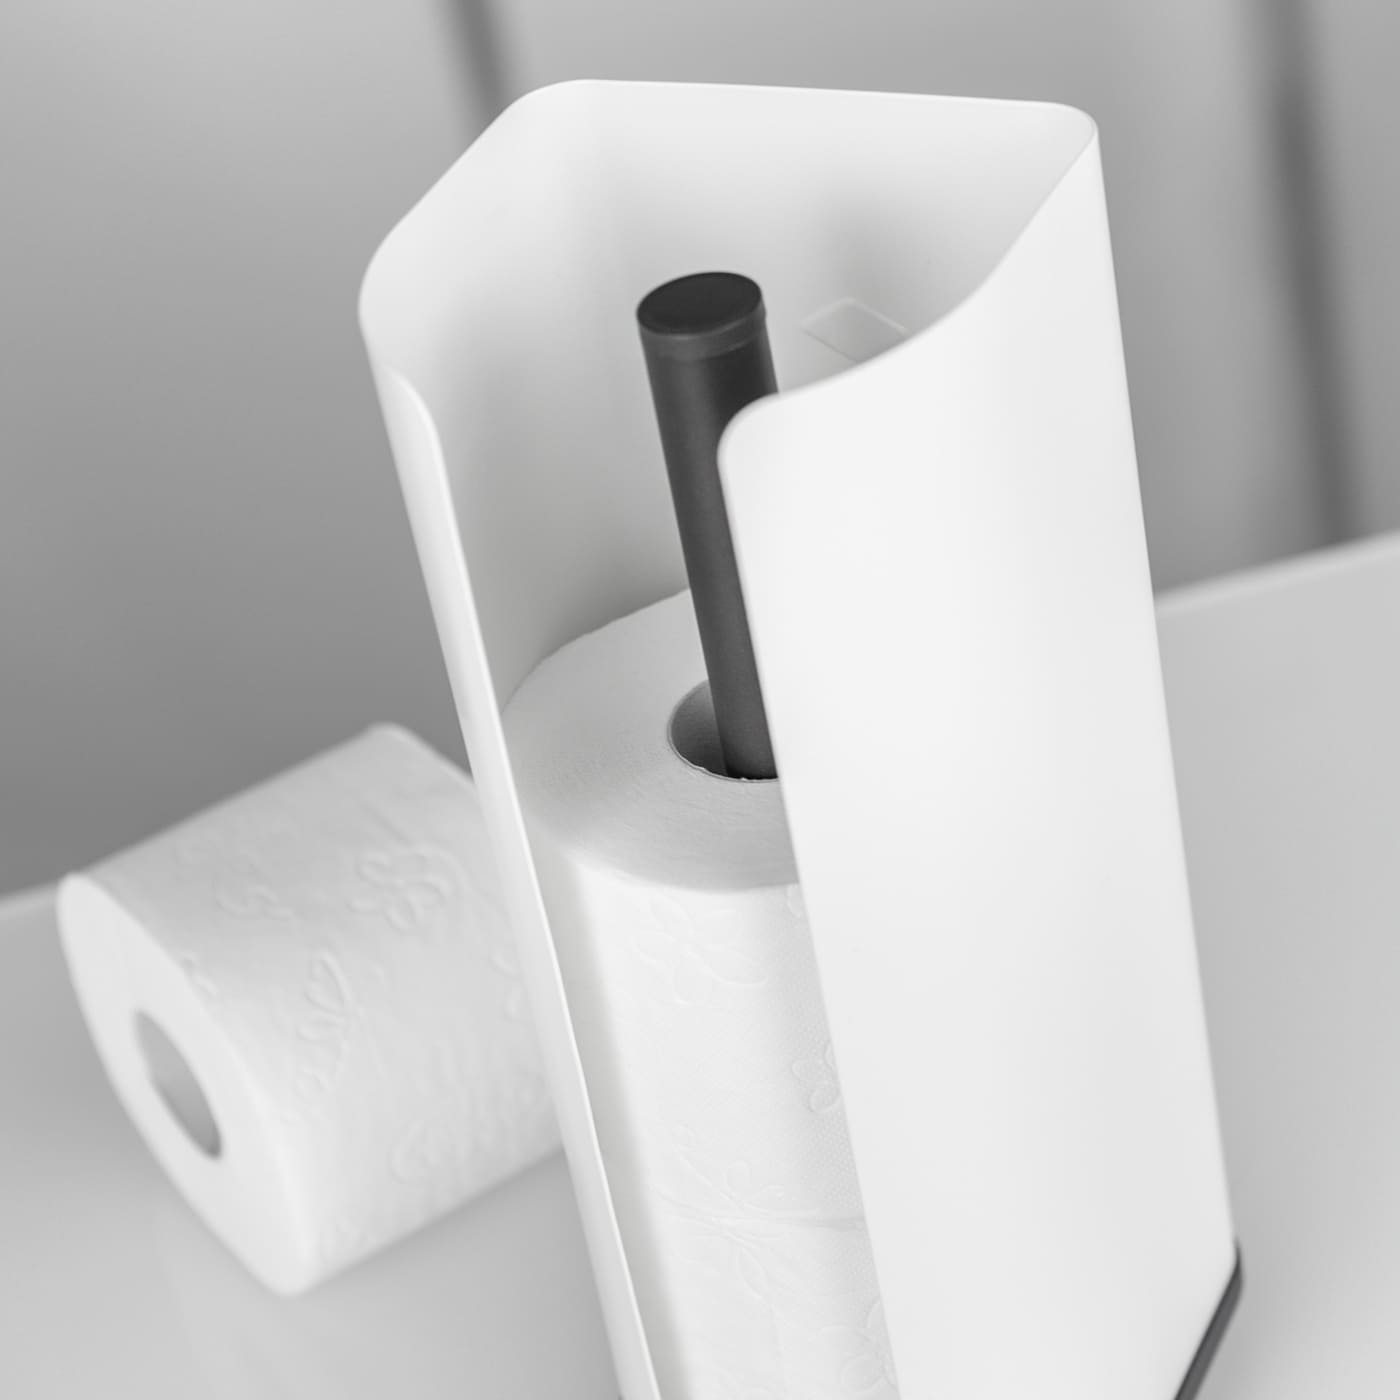 Papierrollenhalter mit gerader Front gefüllt mit zwei Toilettenpapierrollen